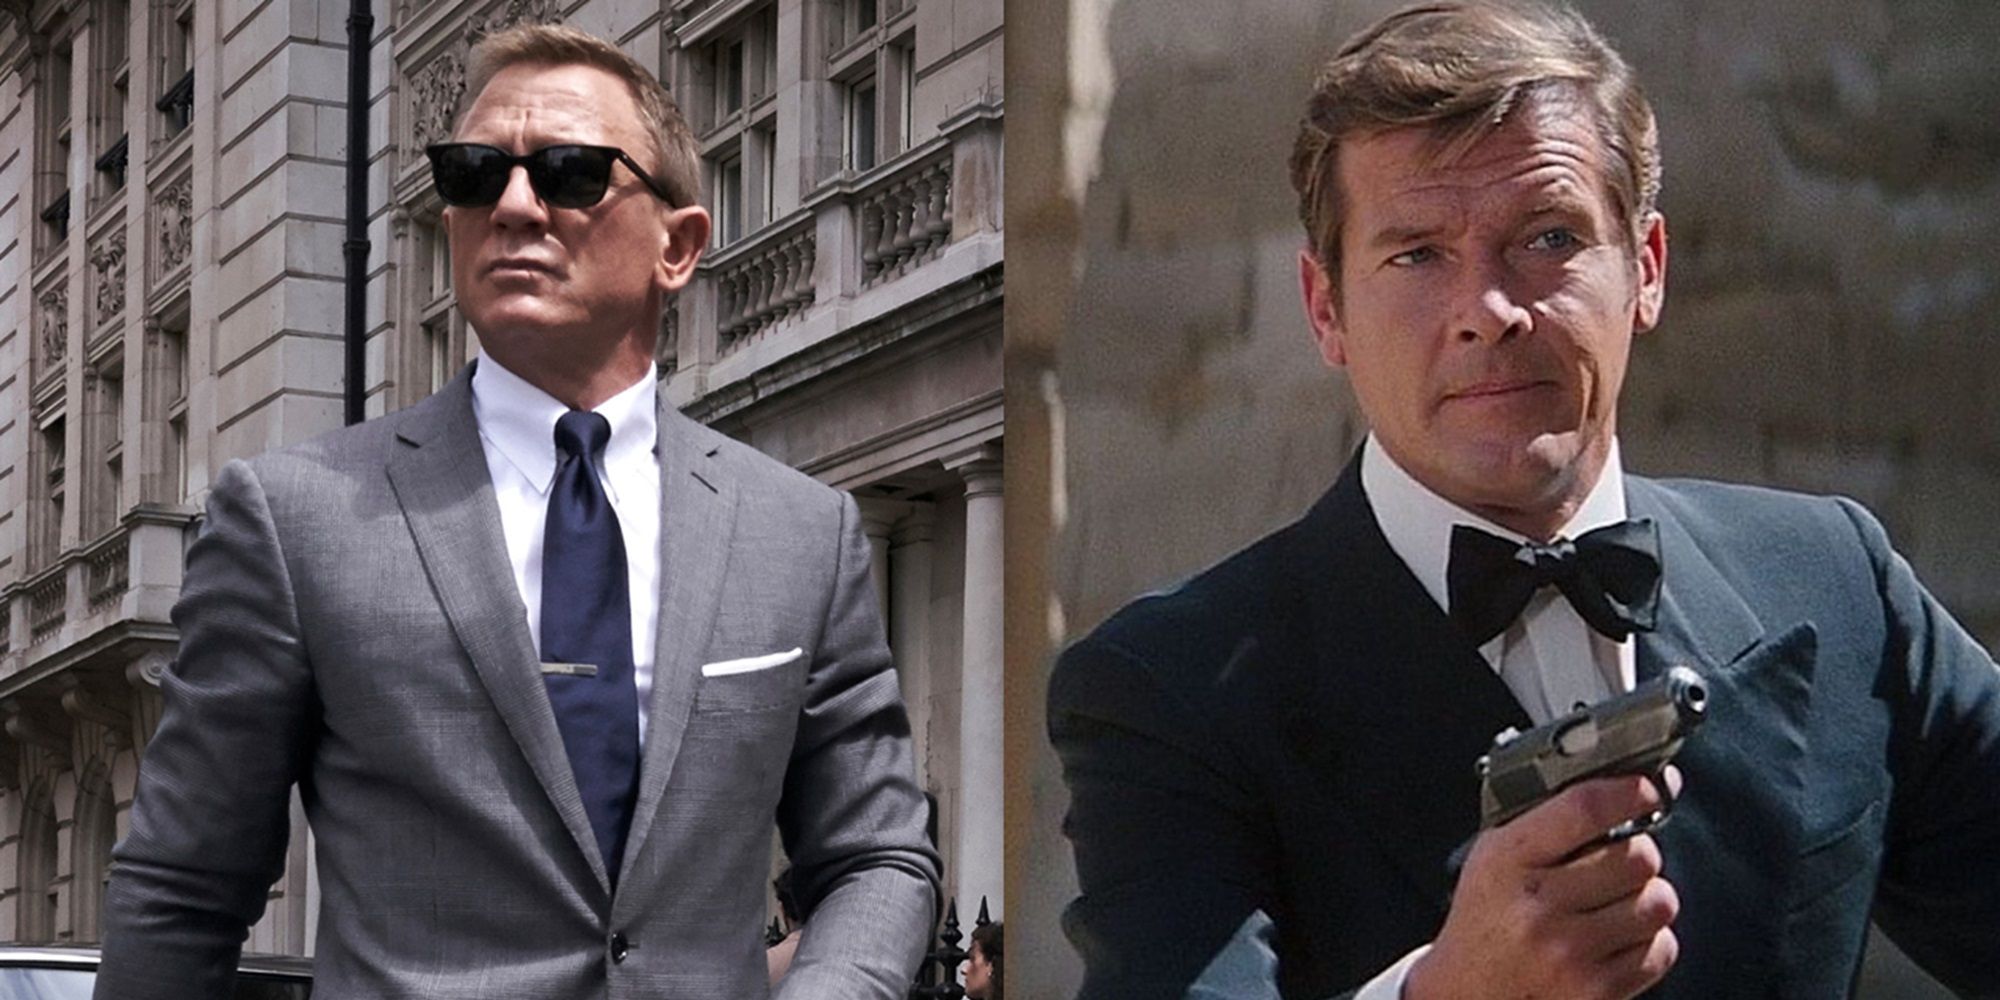 Следующее воплощение франшизы Bond должно вдохновить эпоху Роджера Мура